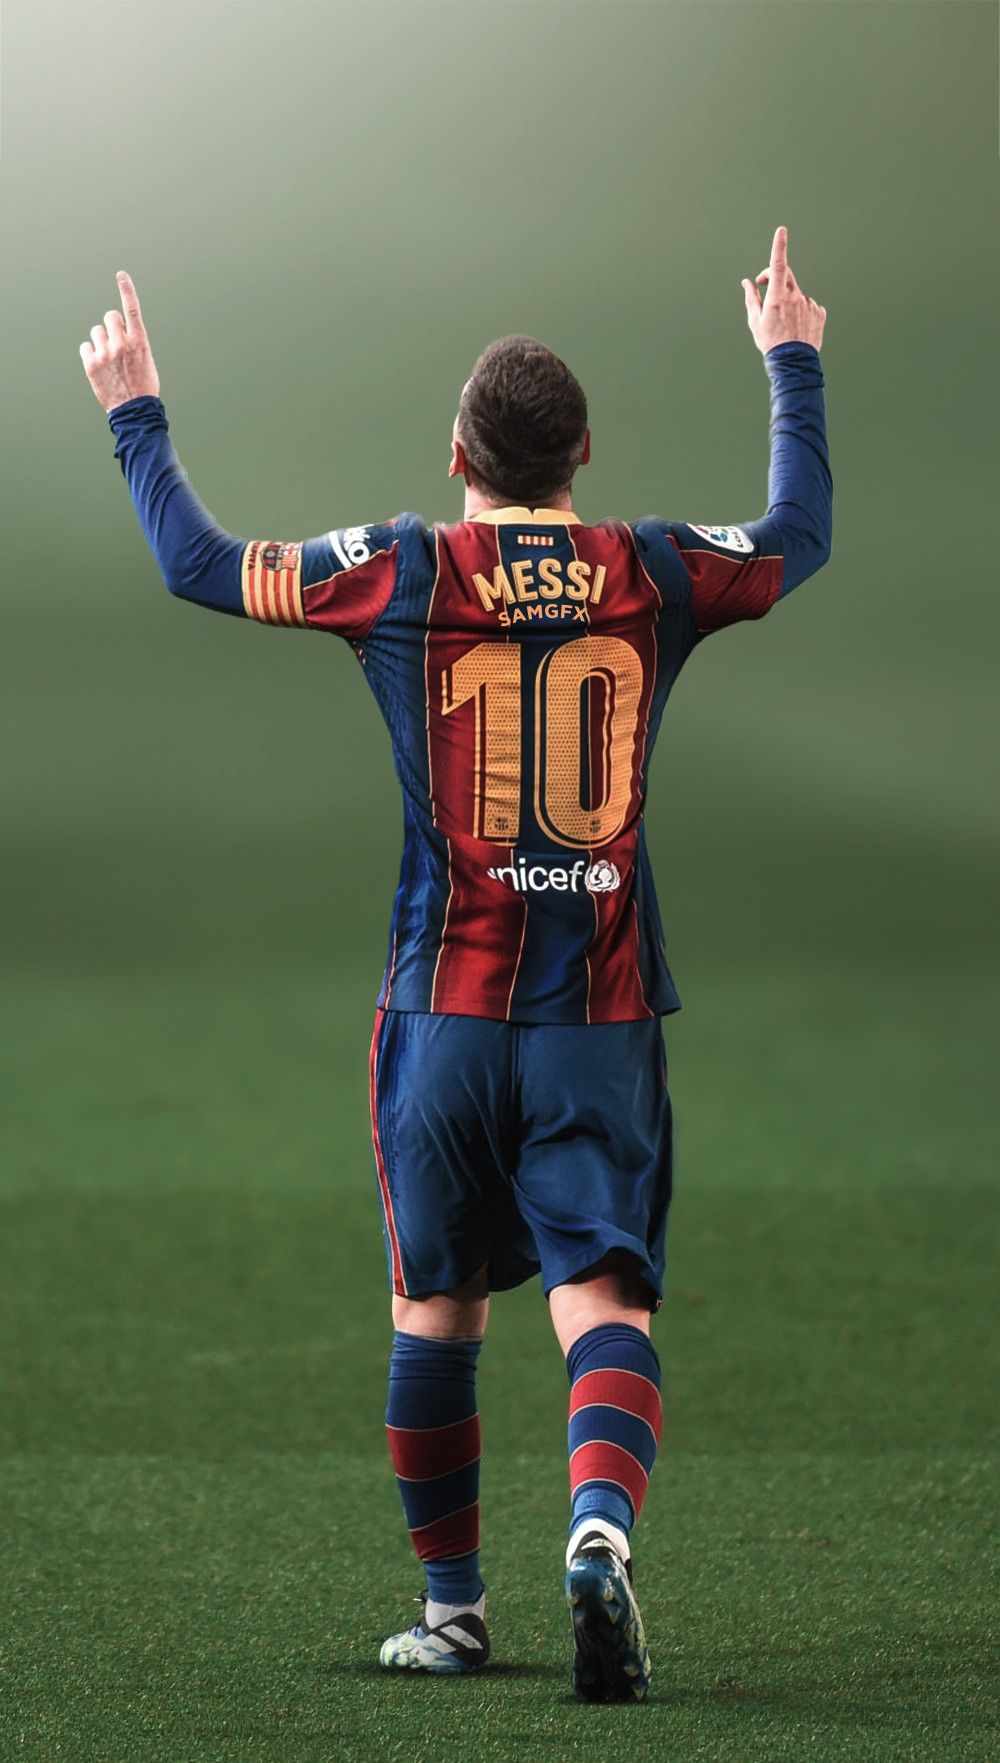 Imágenes de Messi para fondo de pantalla 2021